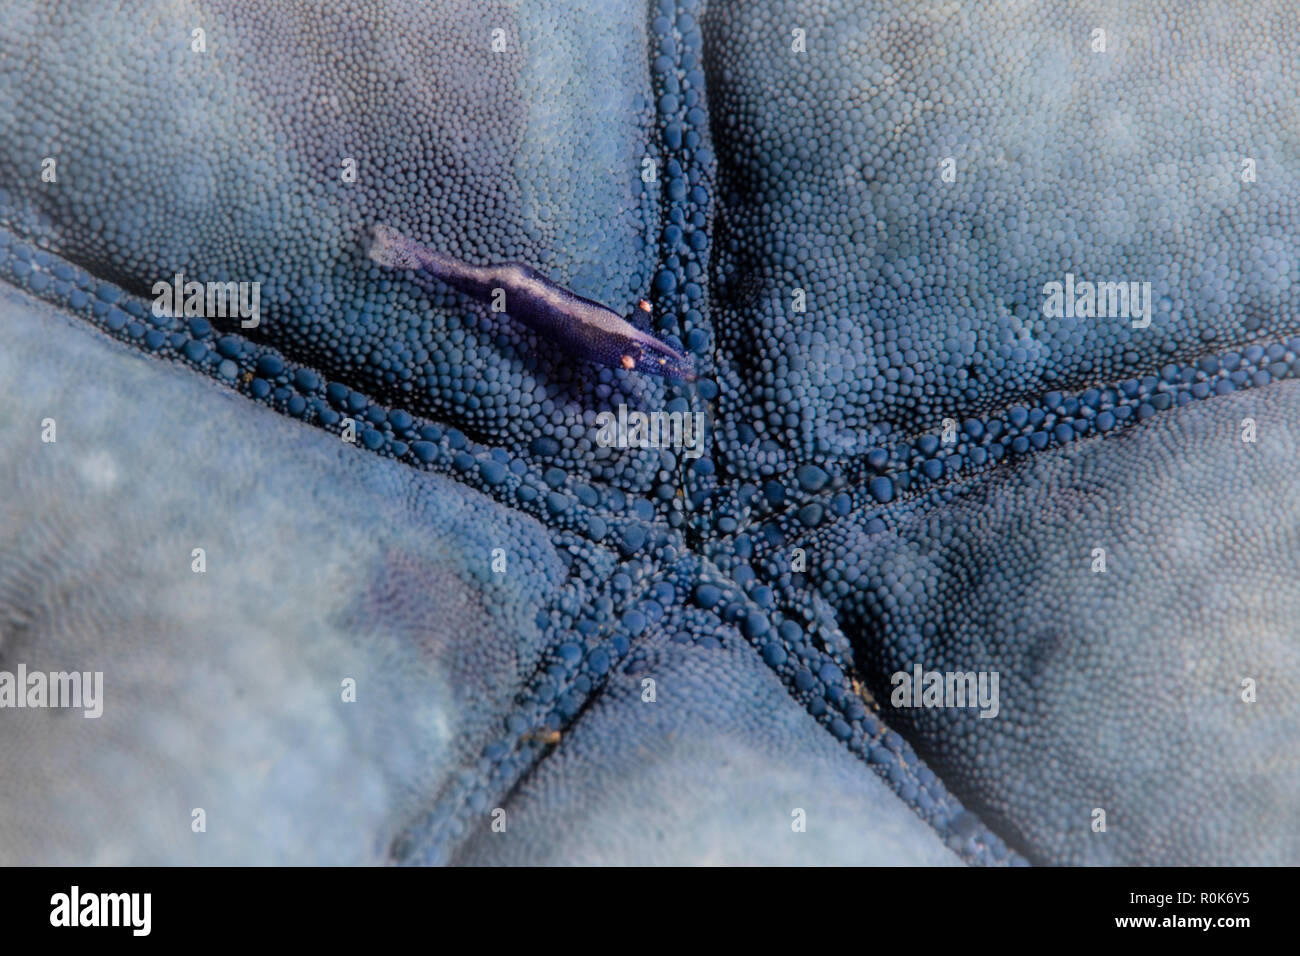 A tiny Periclimenes soror shrimp clings to its host starfish. Stock Photo